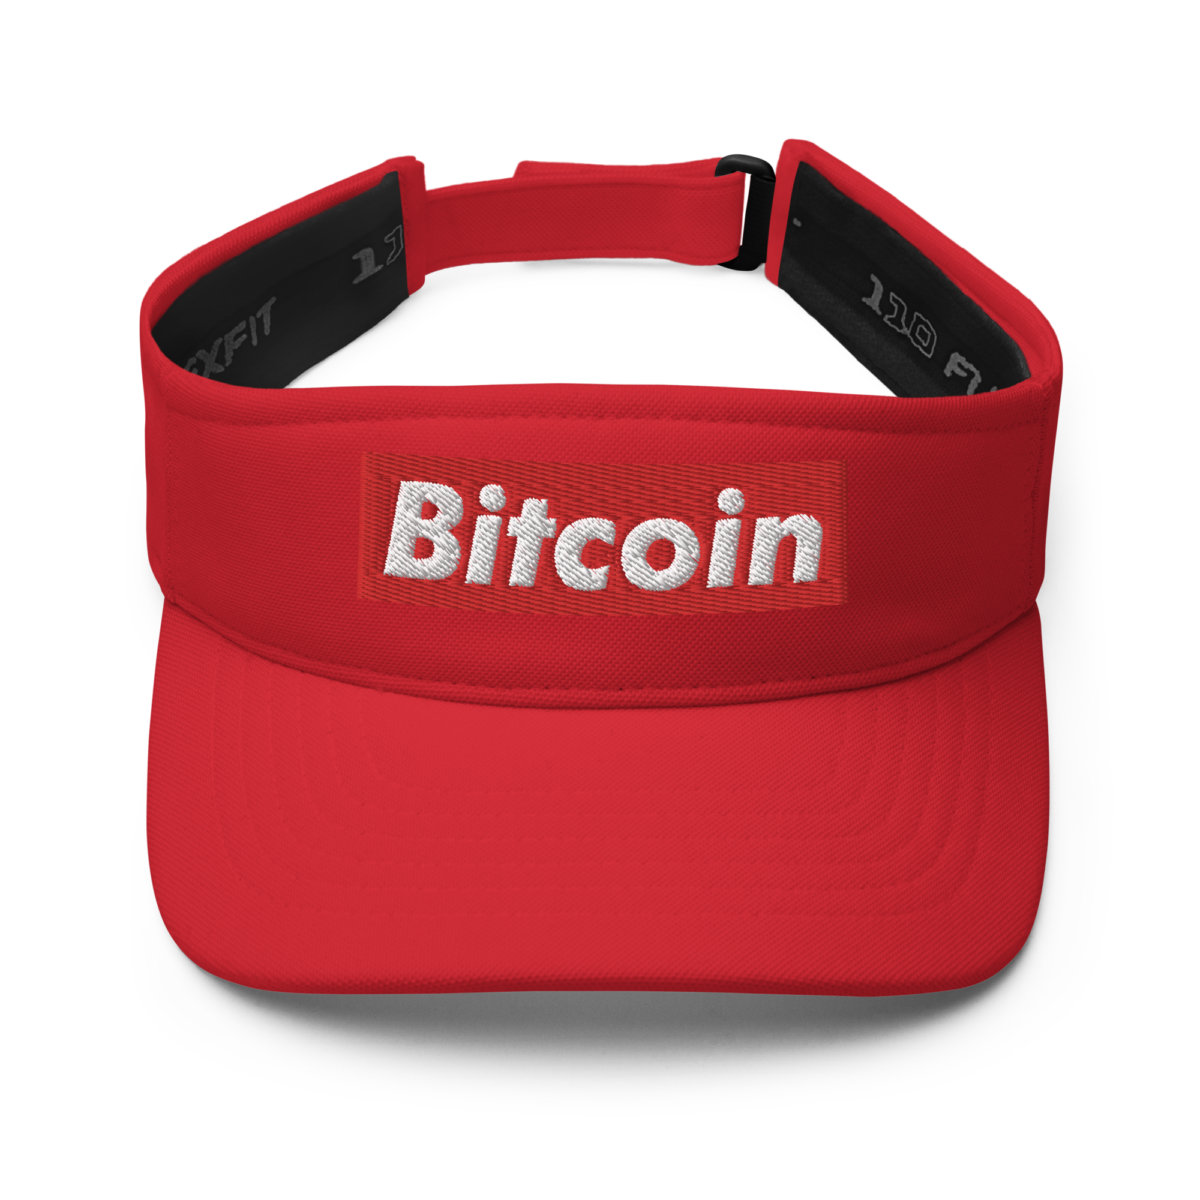 visor red front 62e199173acc4 - Bitcoin (RED) Visor